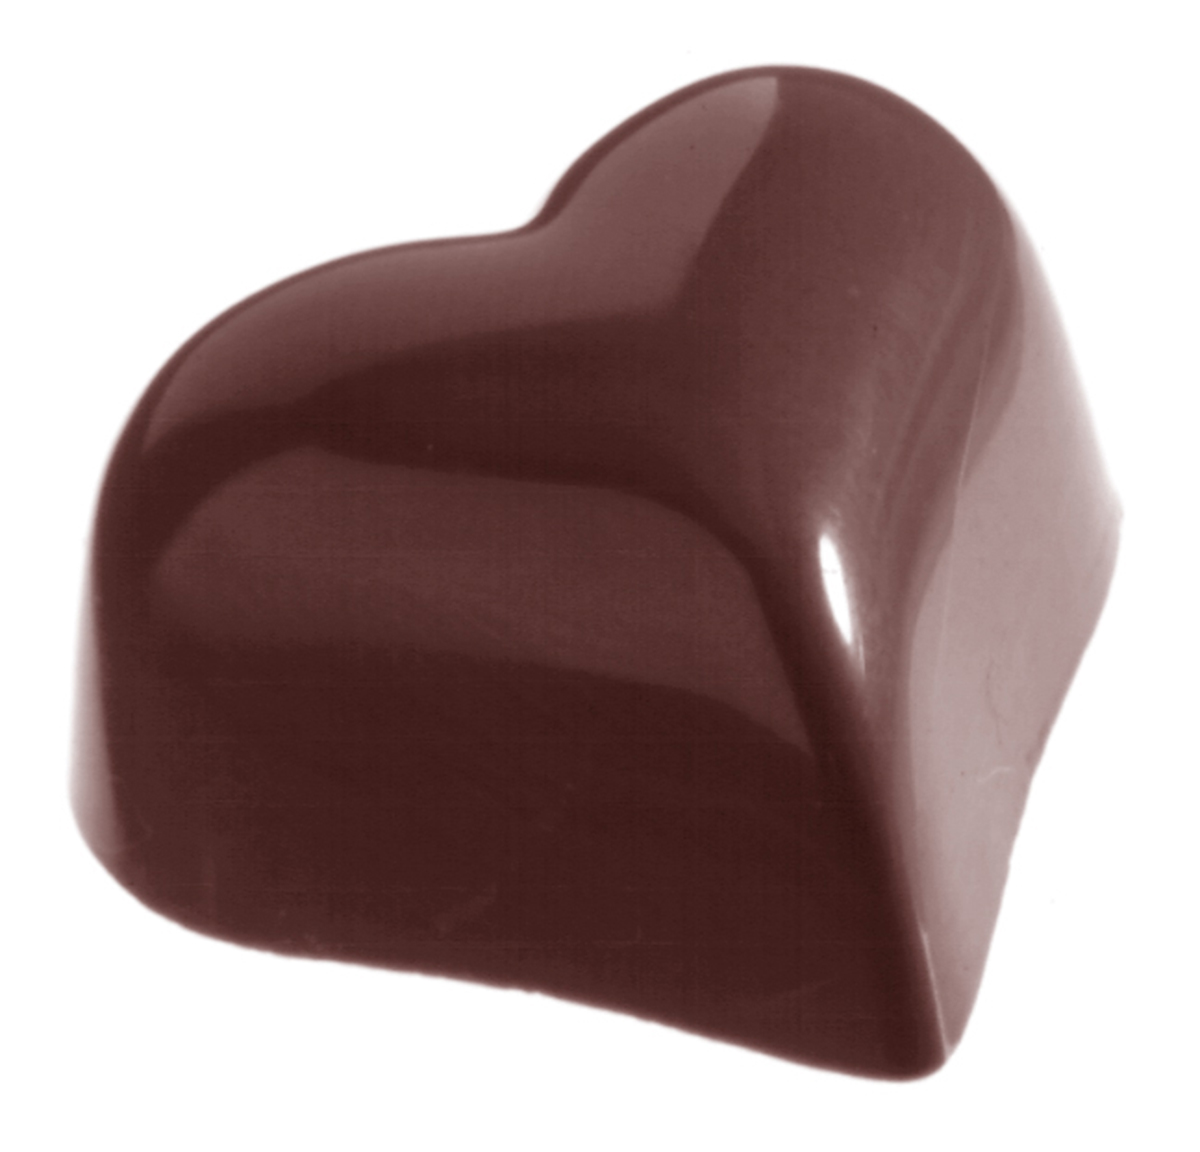 Se Professionel chokoladeform i polycarbonat - Small puffy heart 9 g CW1526 hos BageTid.dk